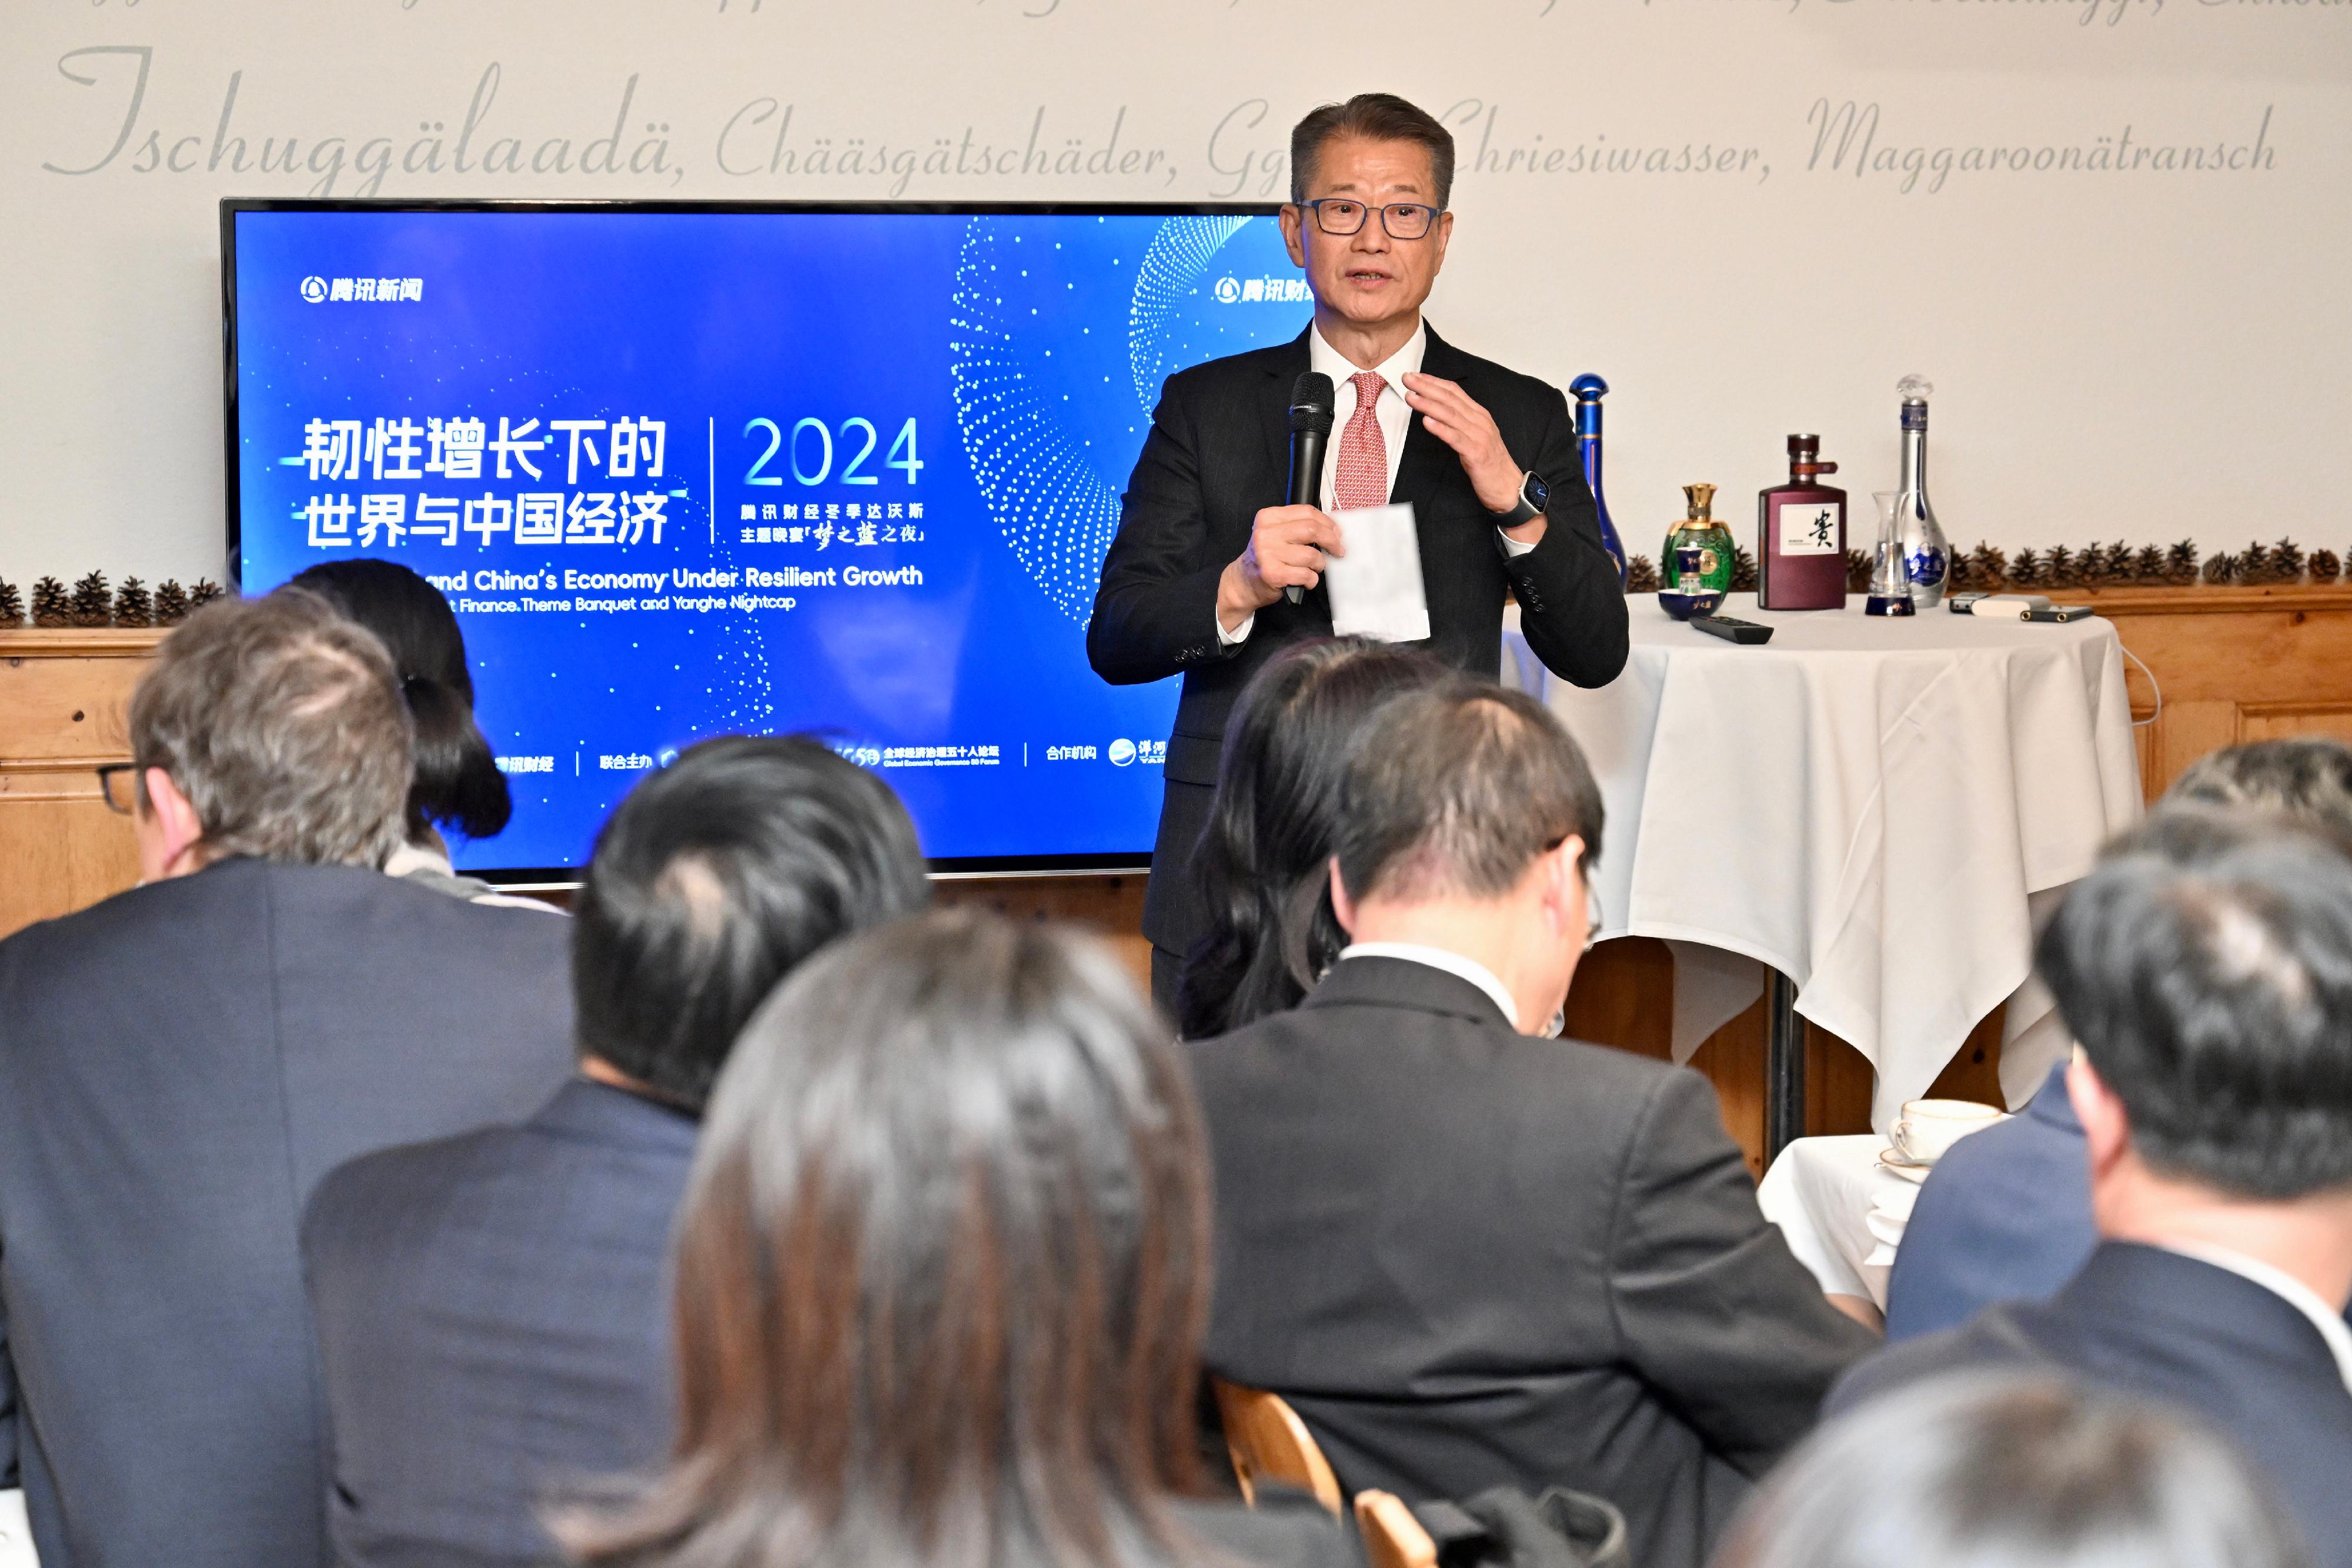 財政司司長陳茂波昨日（達沃斯時間一月十六日）繼續在瑞士達沃斯的訪問行程。圖示陳茂波在騰訊舉辦的「韌性增長下的世界與中國經濟」晚宴上致辭。